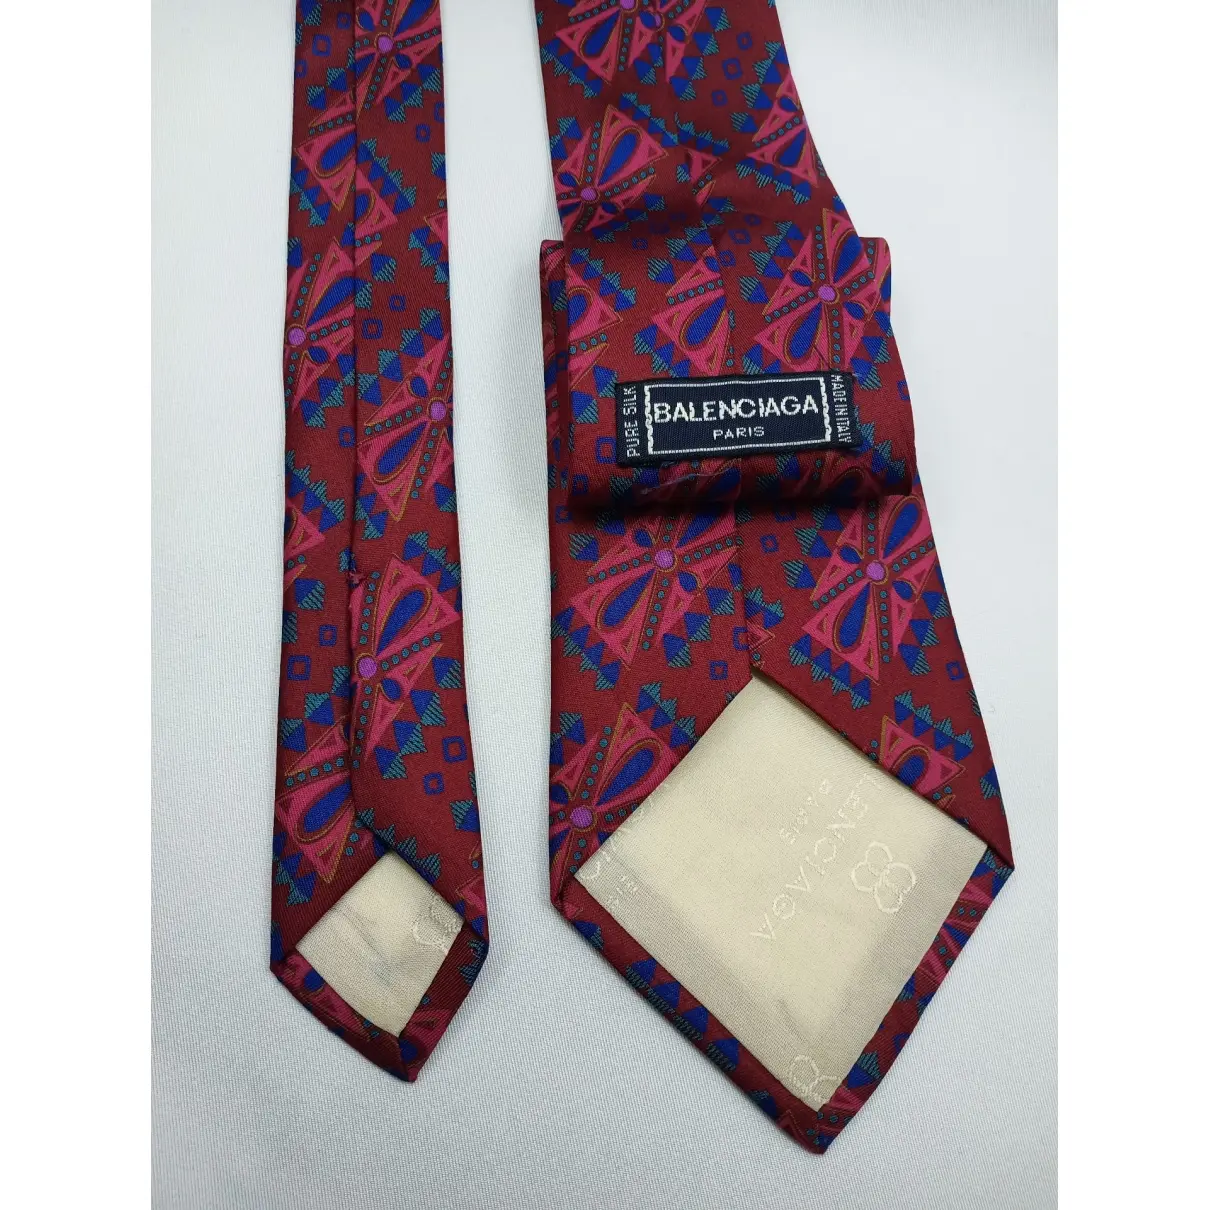 Balenciaga Silk tie for sale